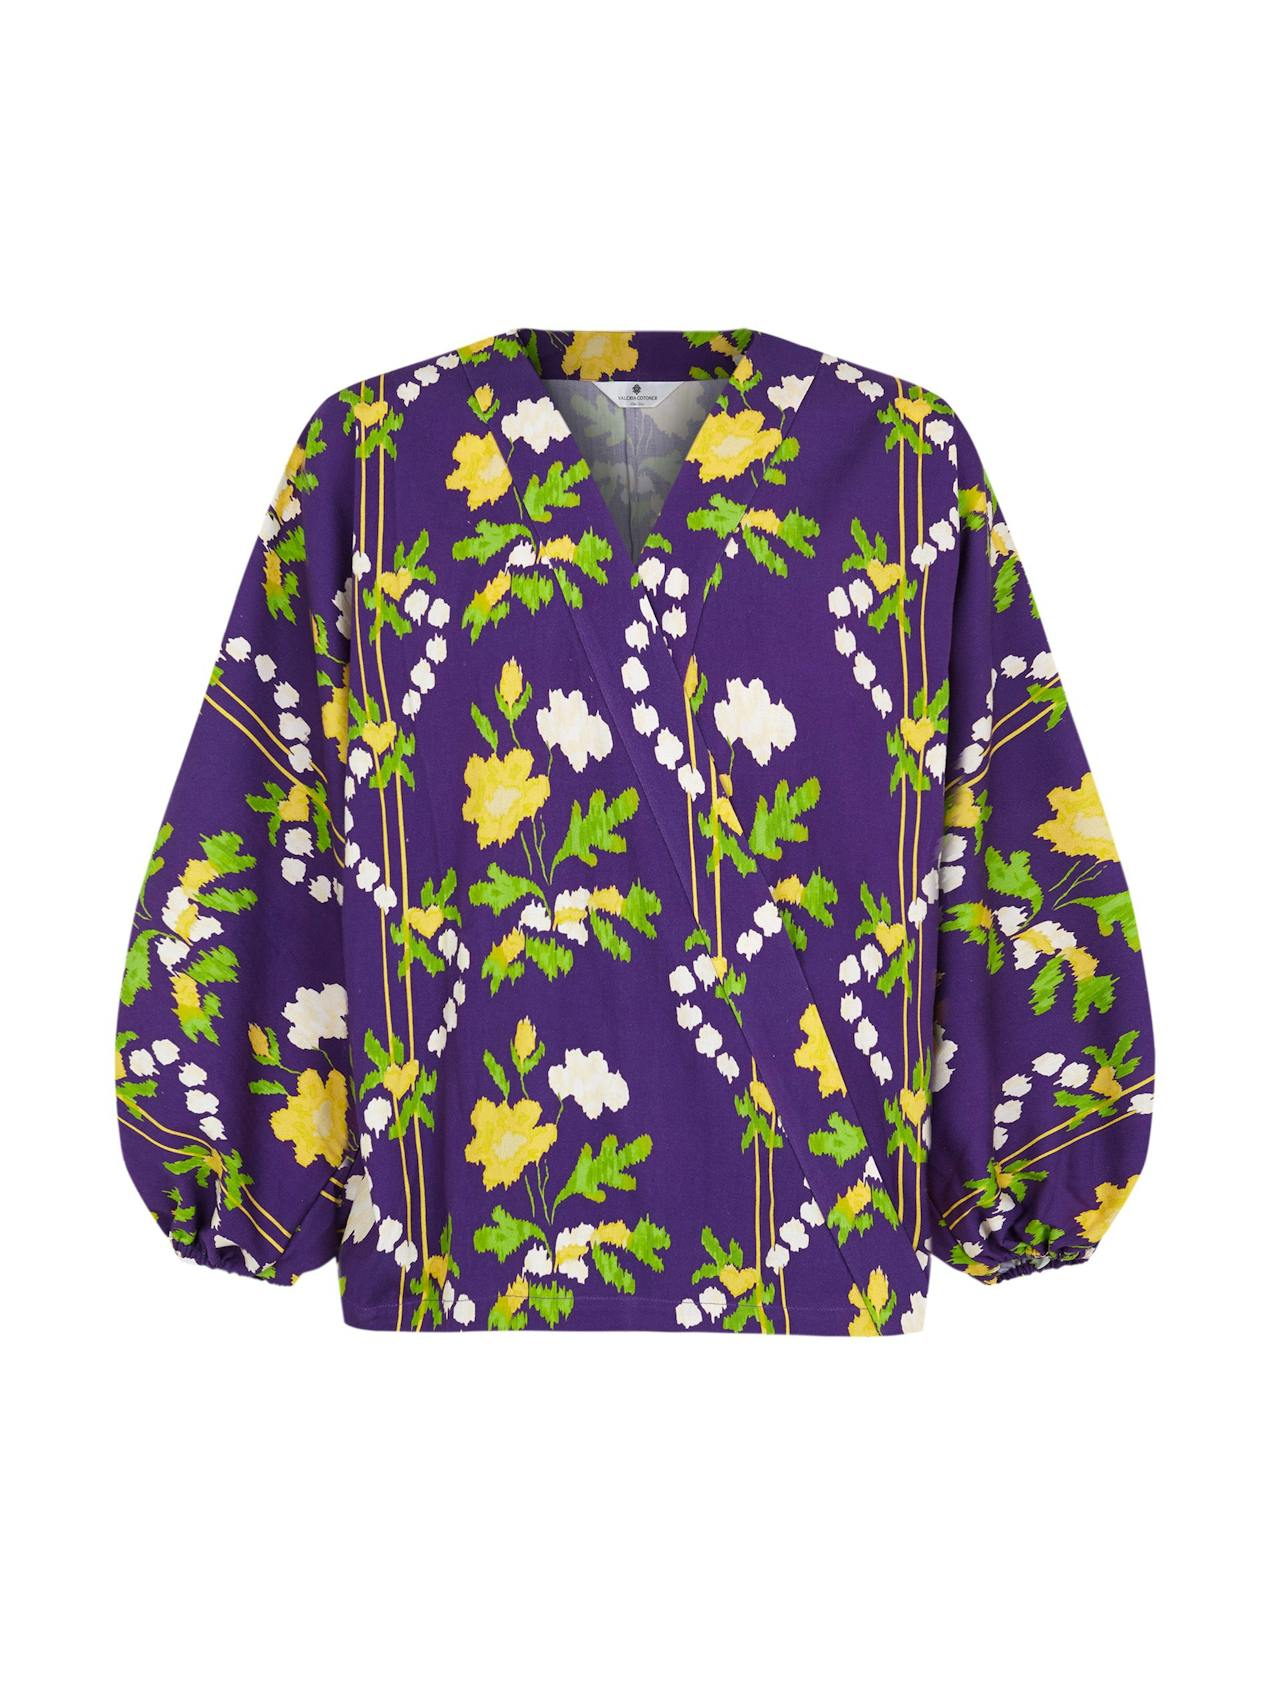 Purple floral print blouse